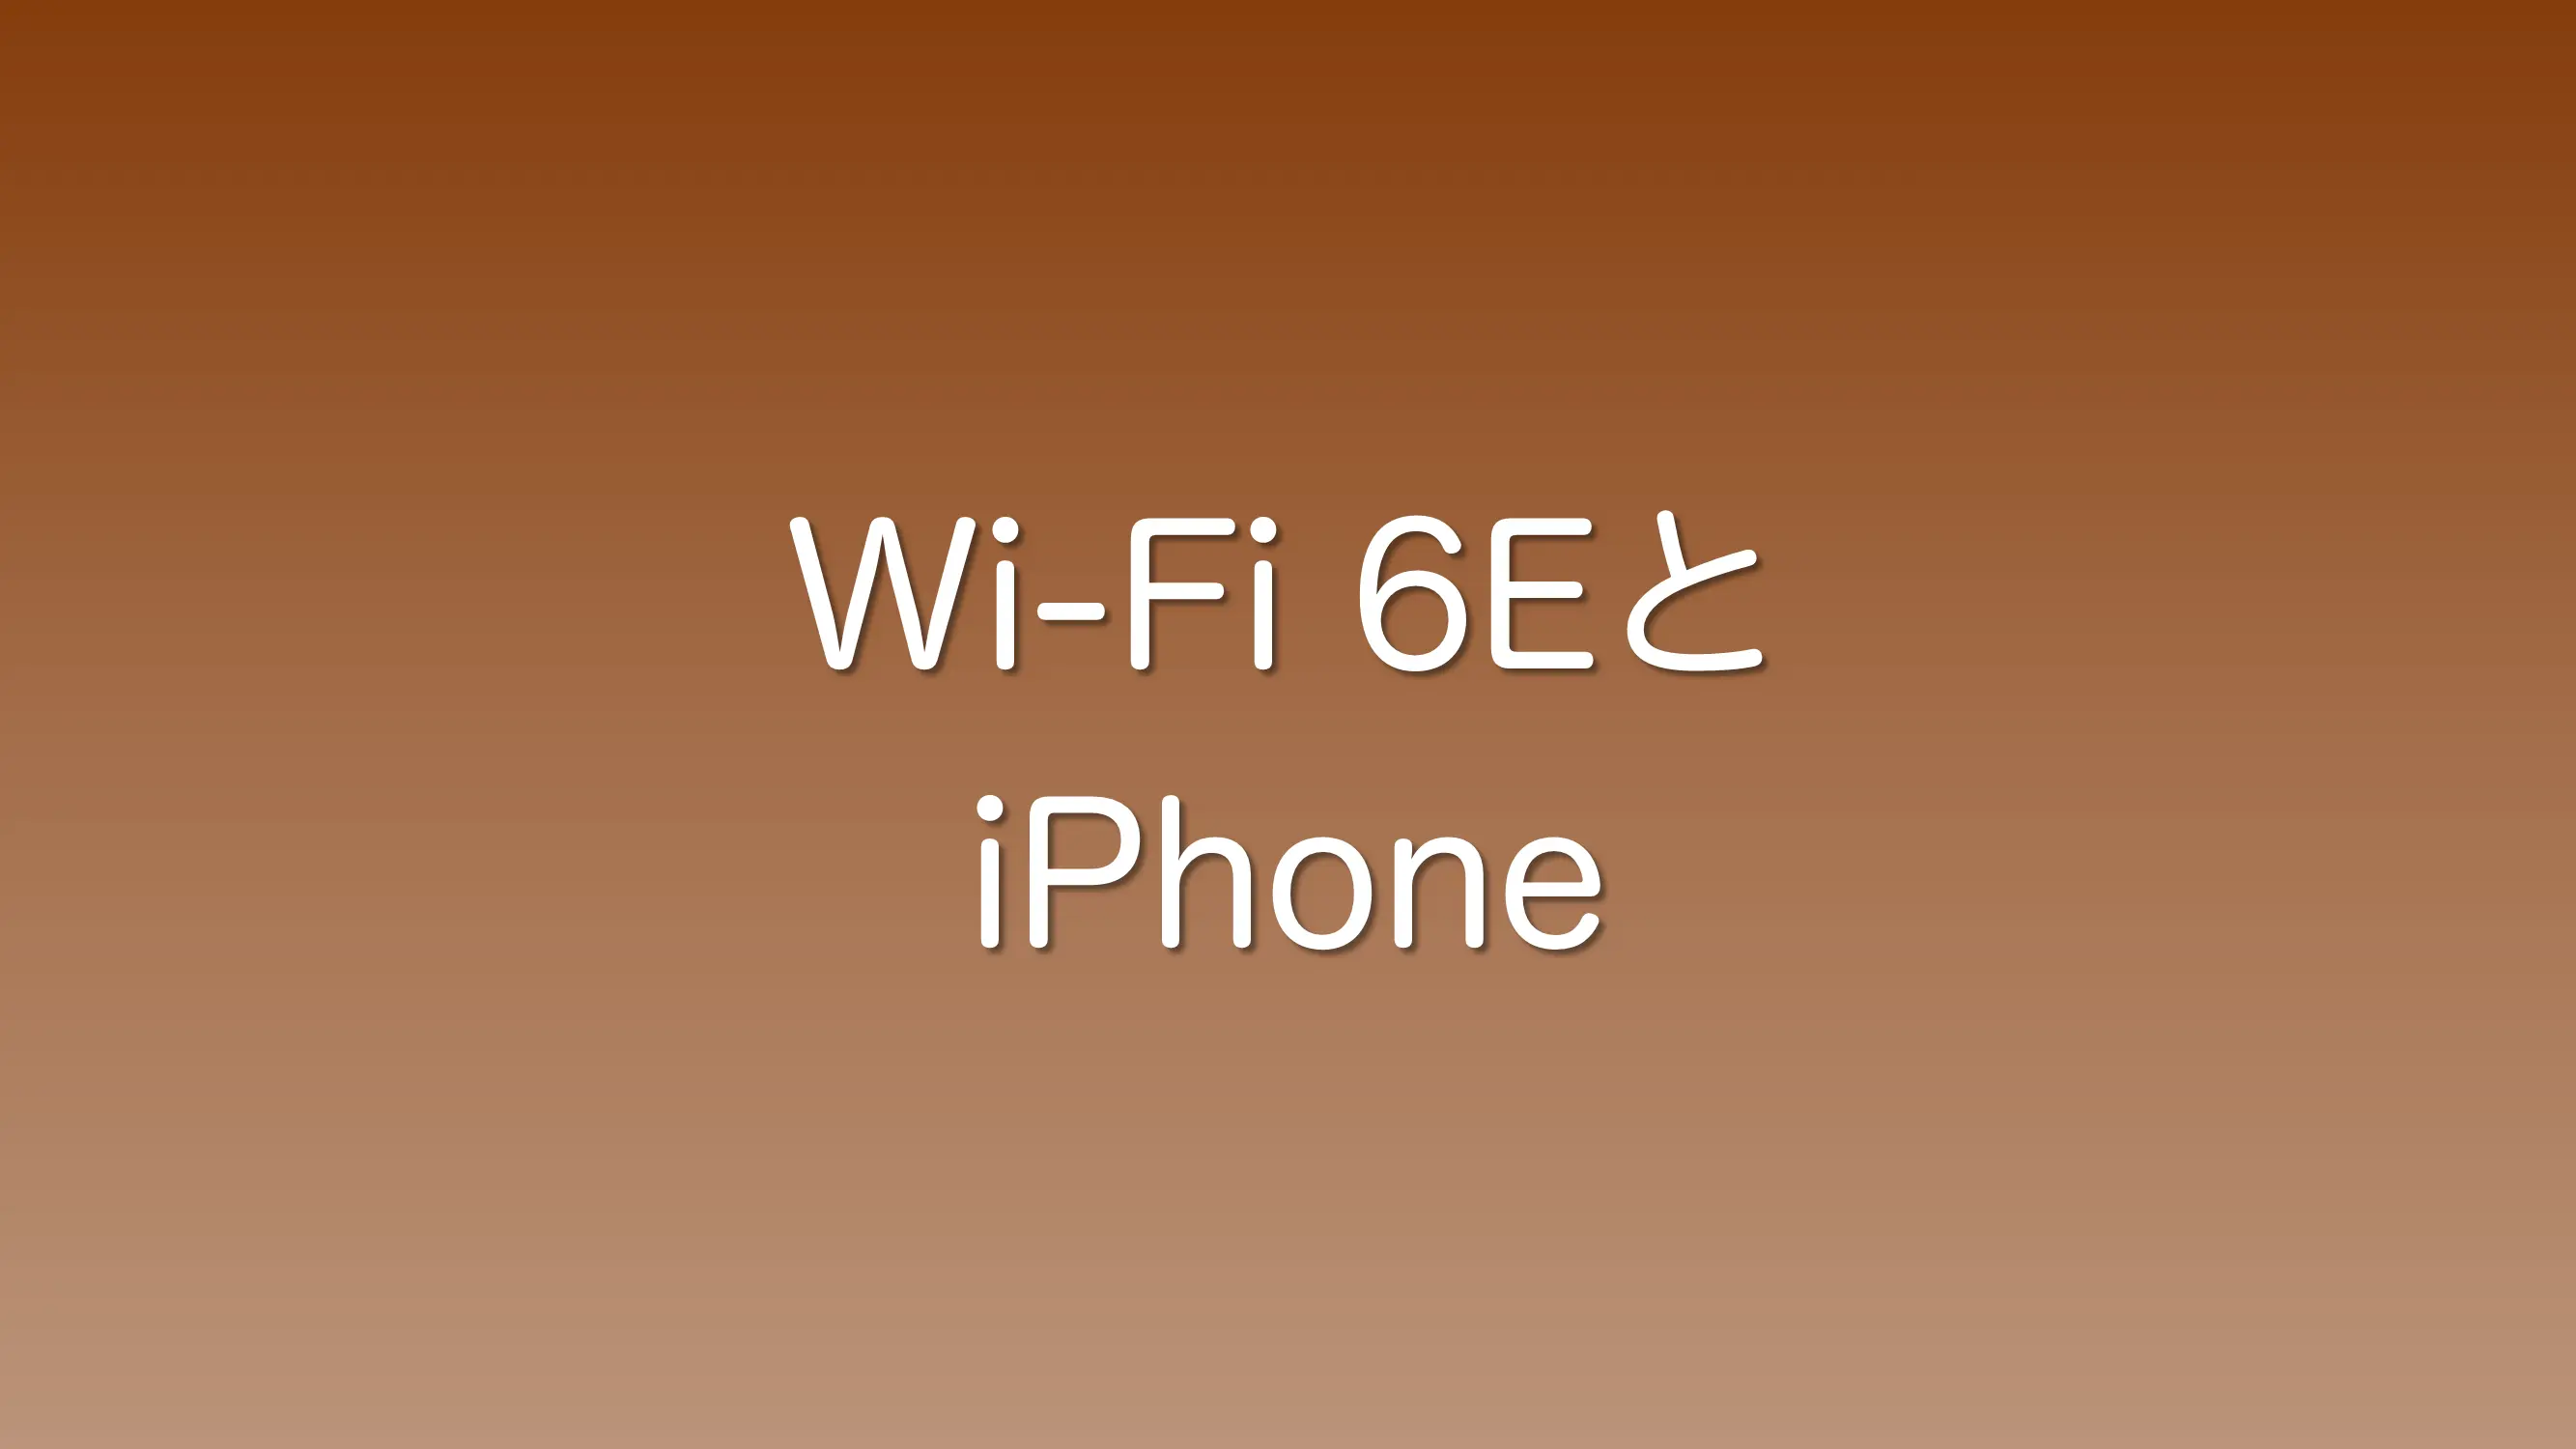 Wifi 6Eに対応したiPhoneはどれか？